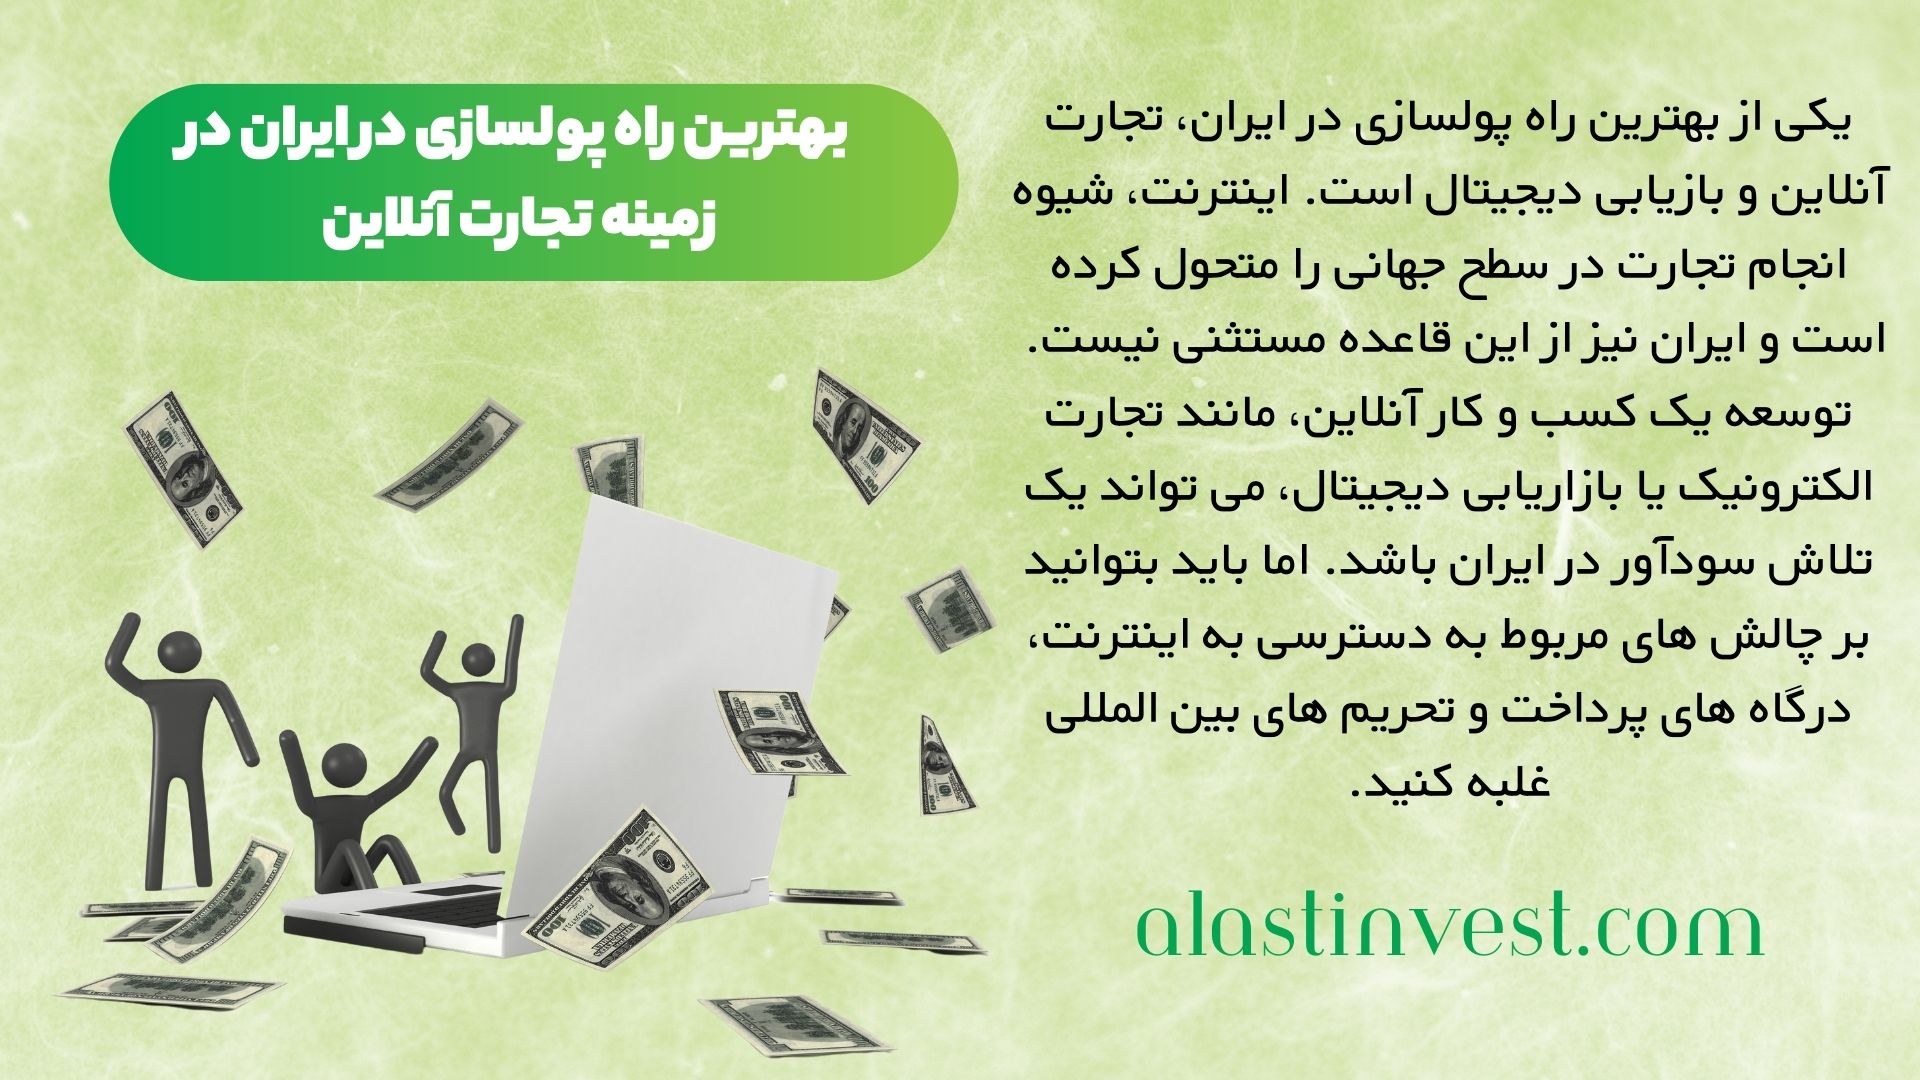 بهترین راه پولسازی در ایران در زمینه تجارت آنلاین